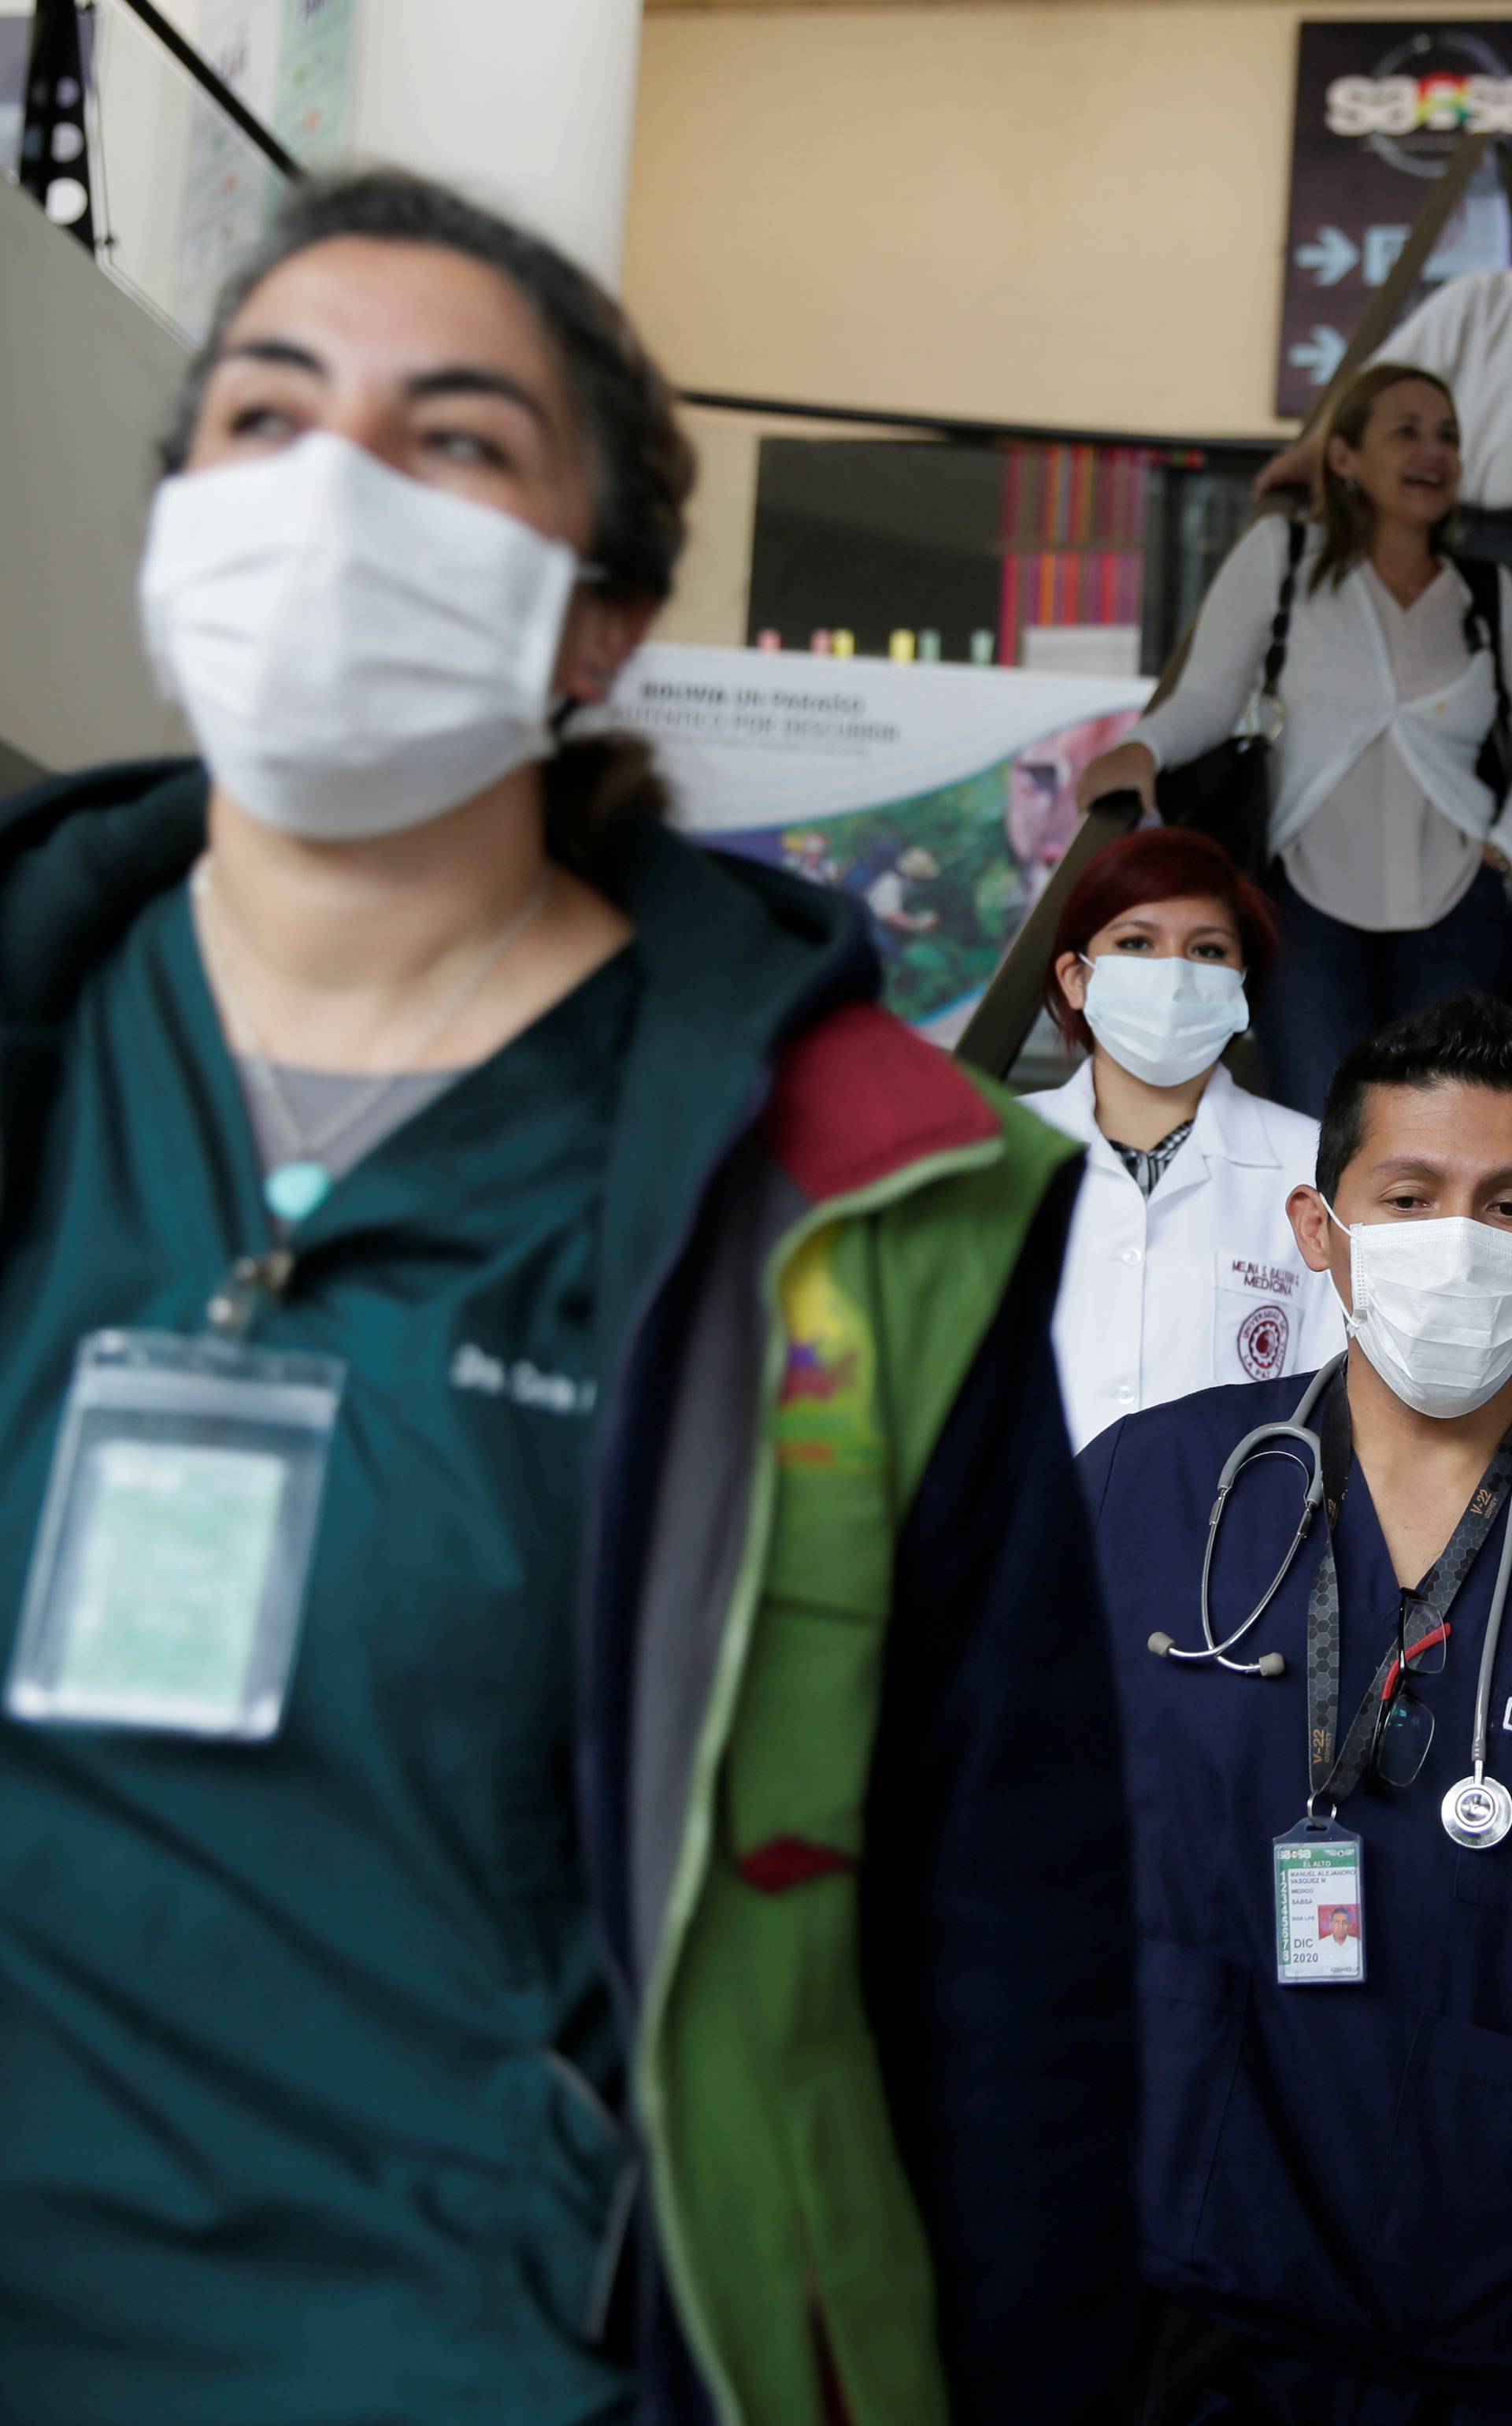 Korona virus ubio 1113 ljudi: 'Veća prijetnja nego terorizam'